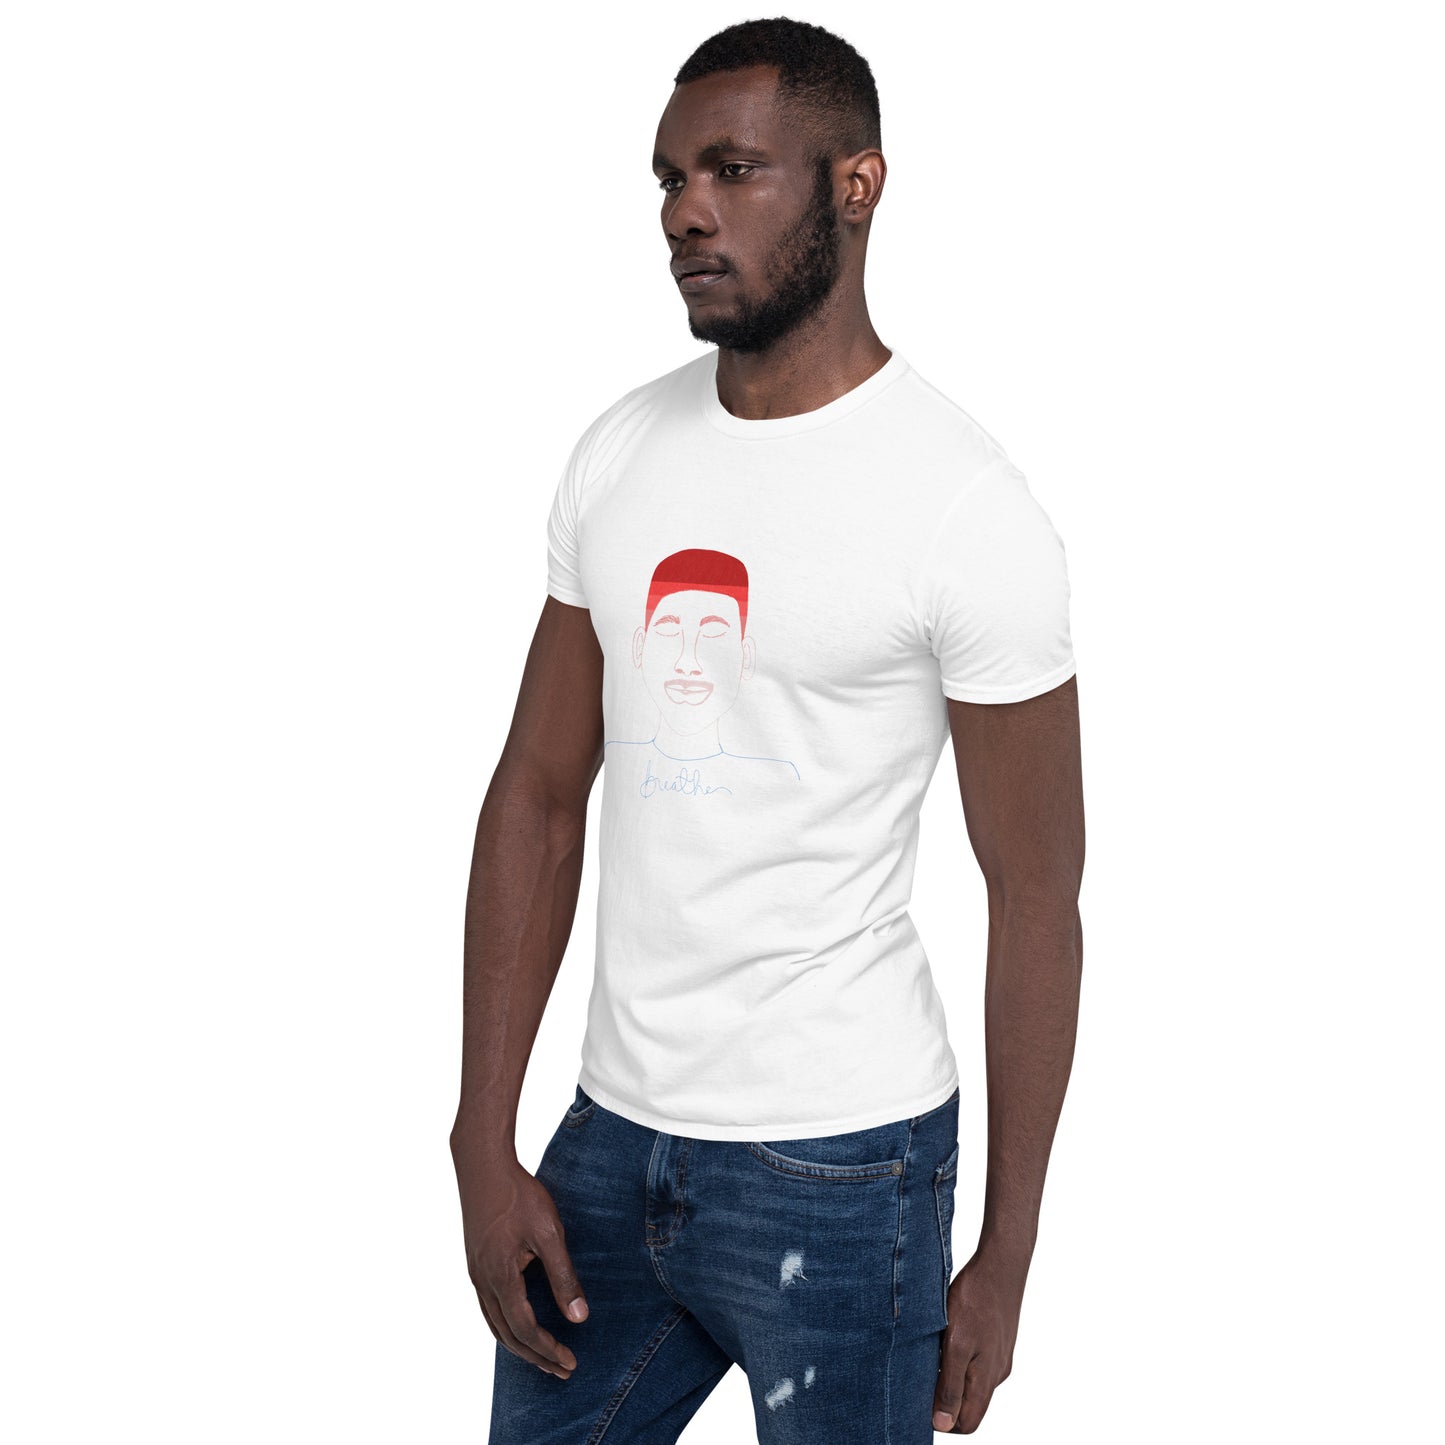 “Breathe” Short-Sleeve Unisex T-Shirt